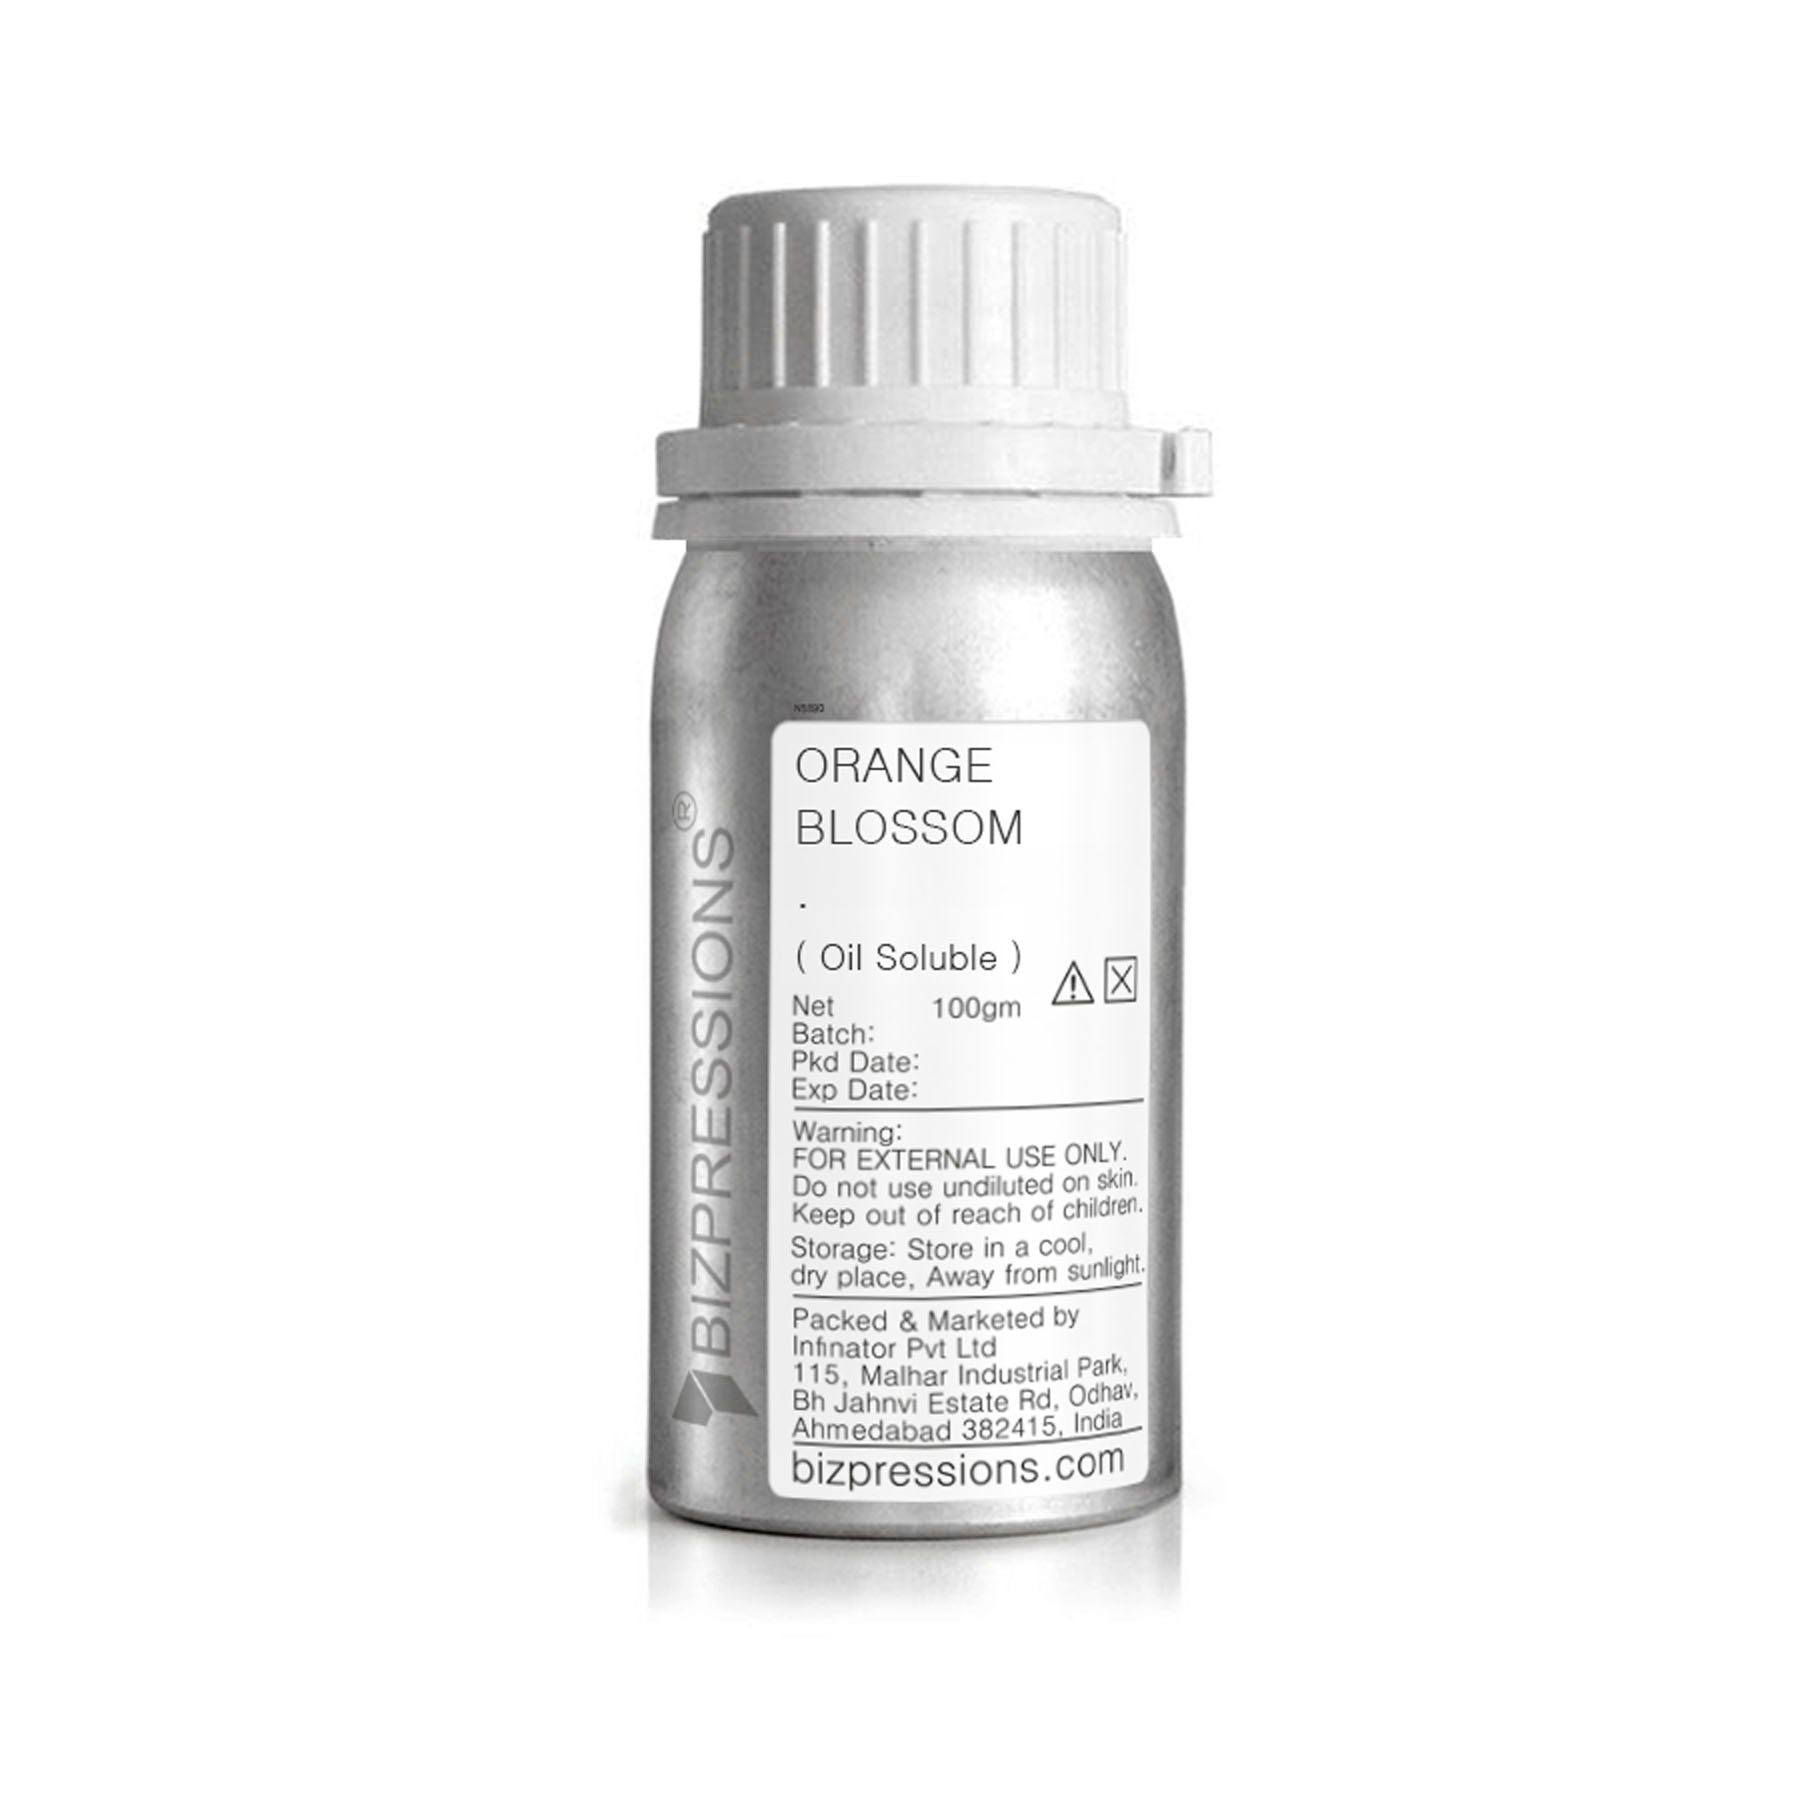 ORANGE BLOSSOM - Fragrance ( Oil Soluble ) - 100 gm